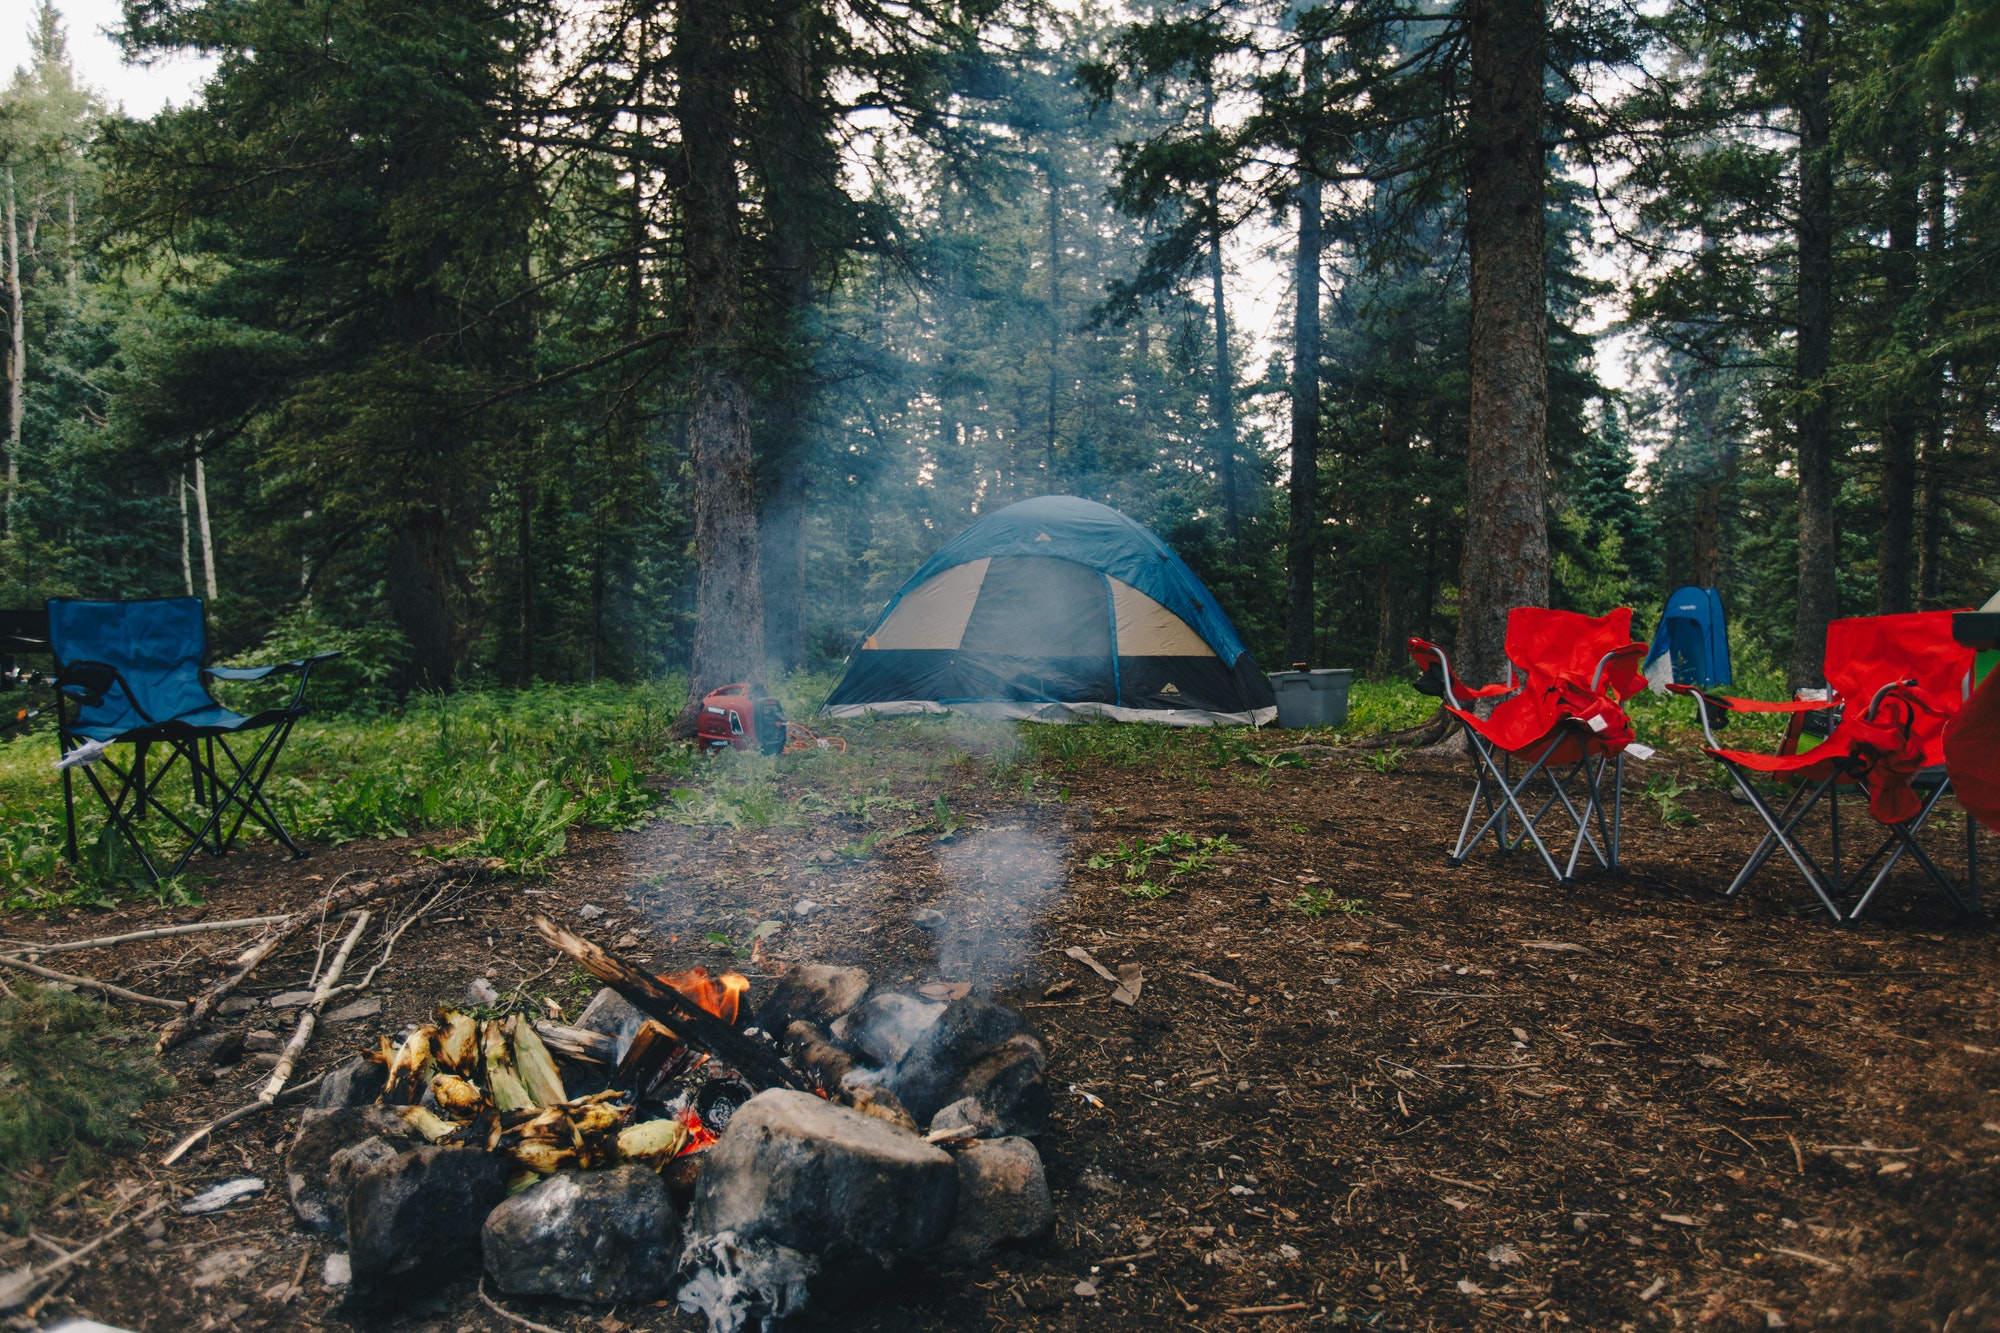 Les astuces pour bien choisir son emplacement de camping